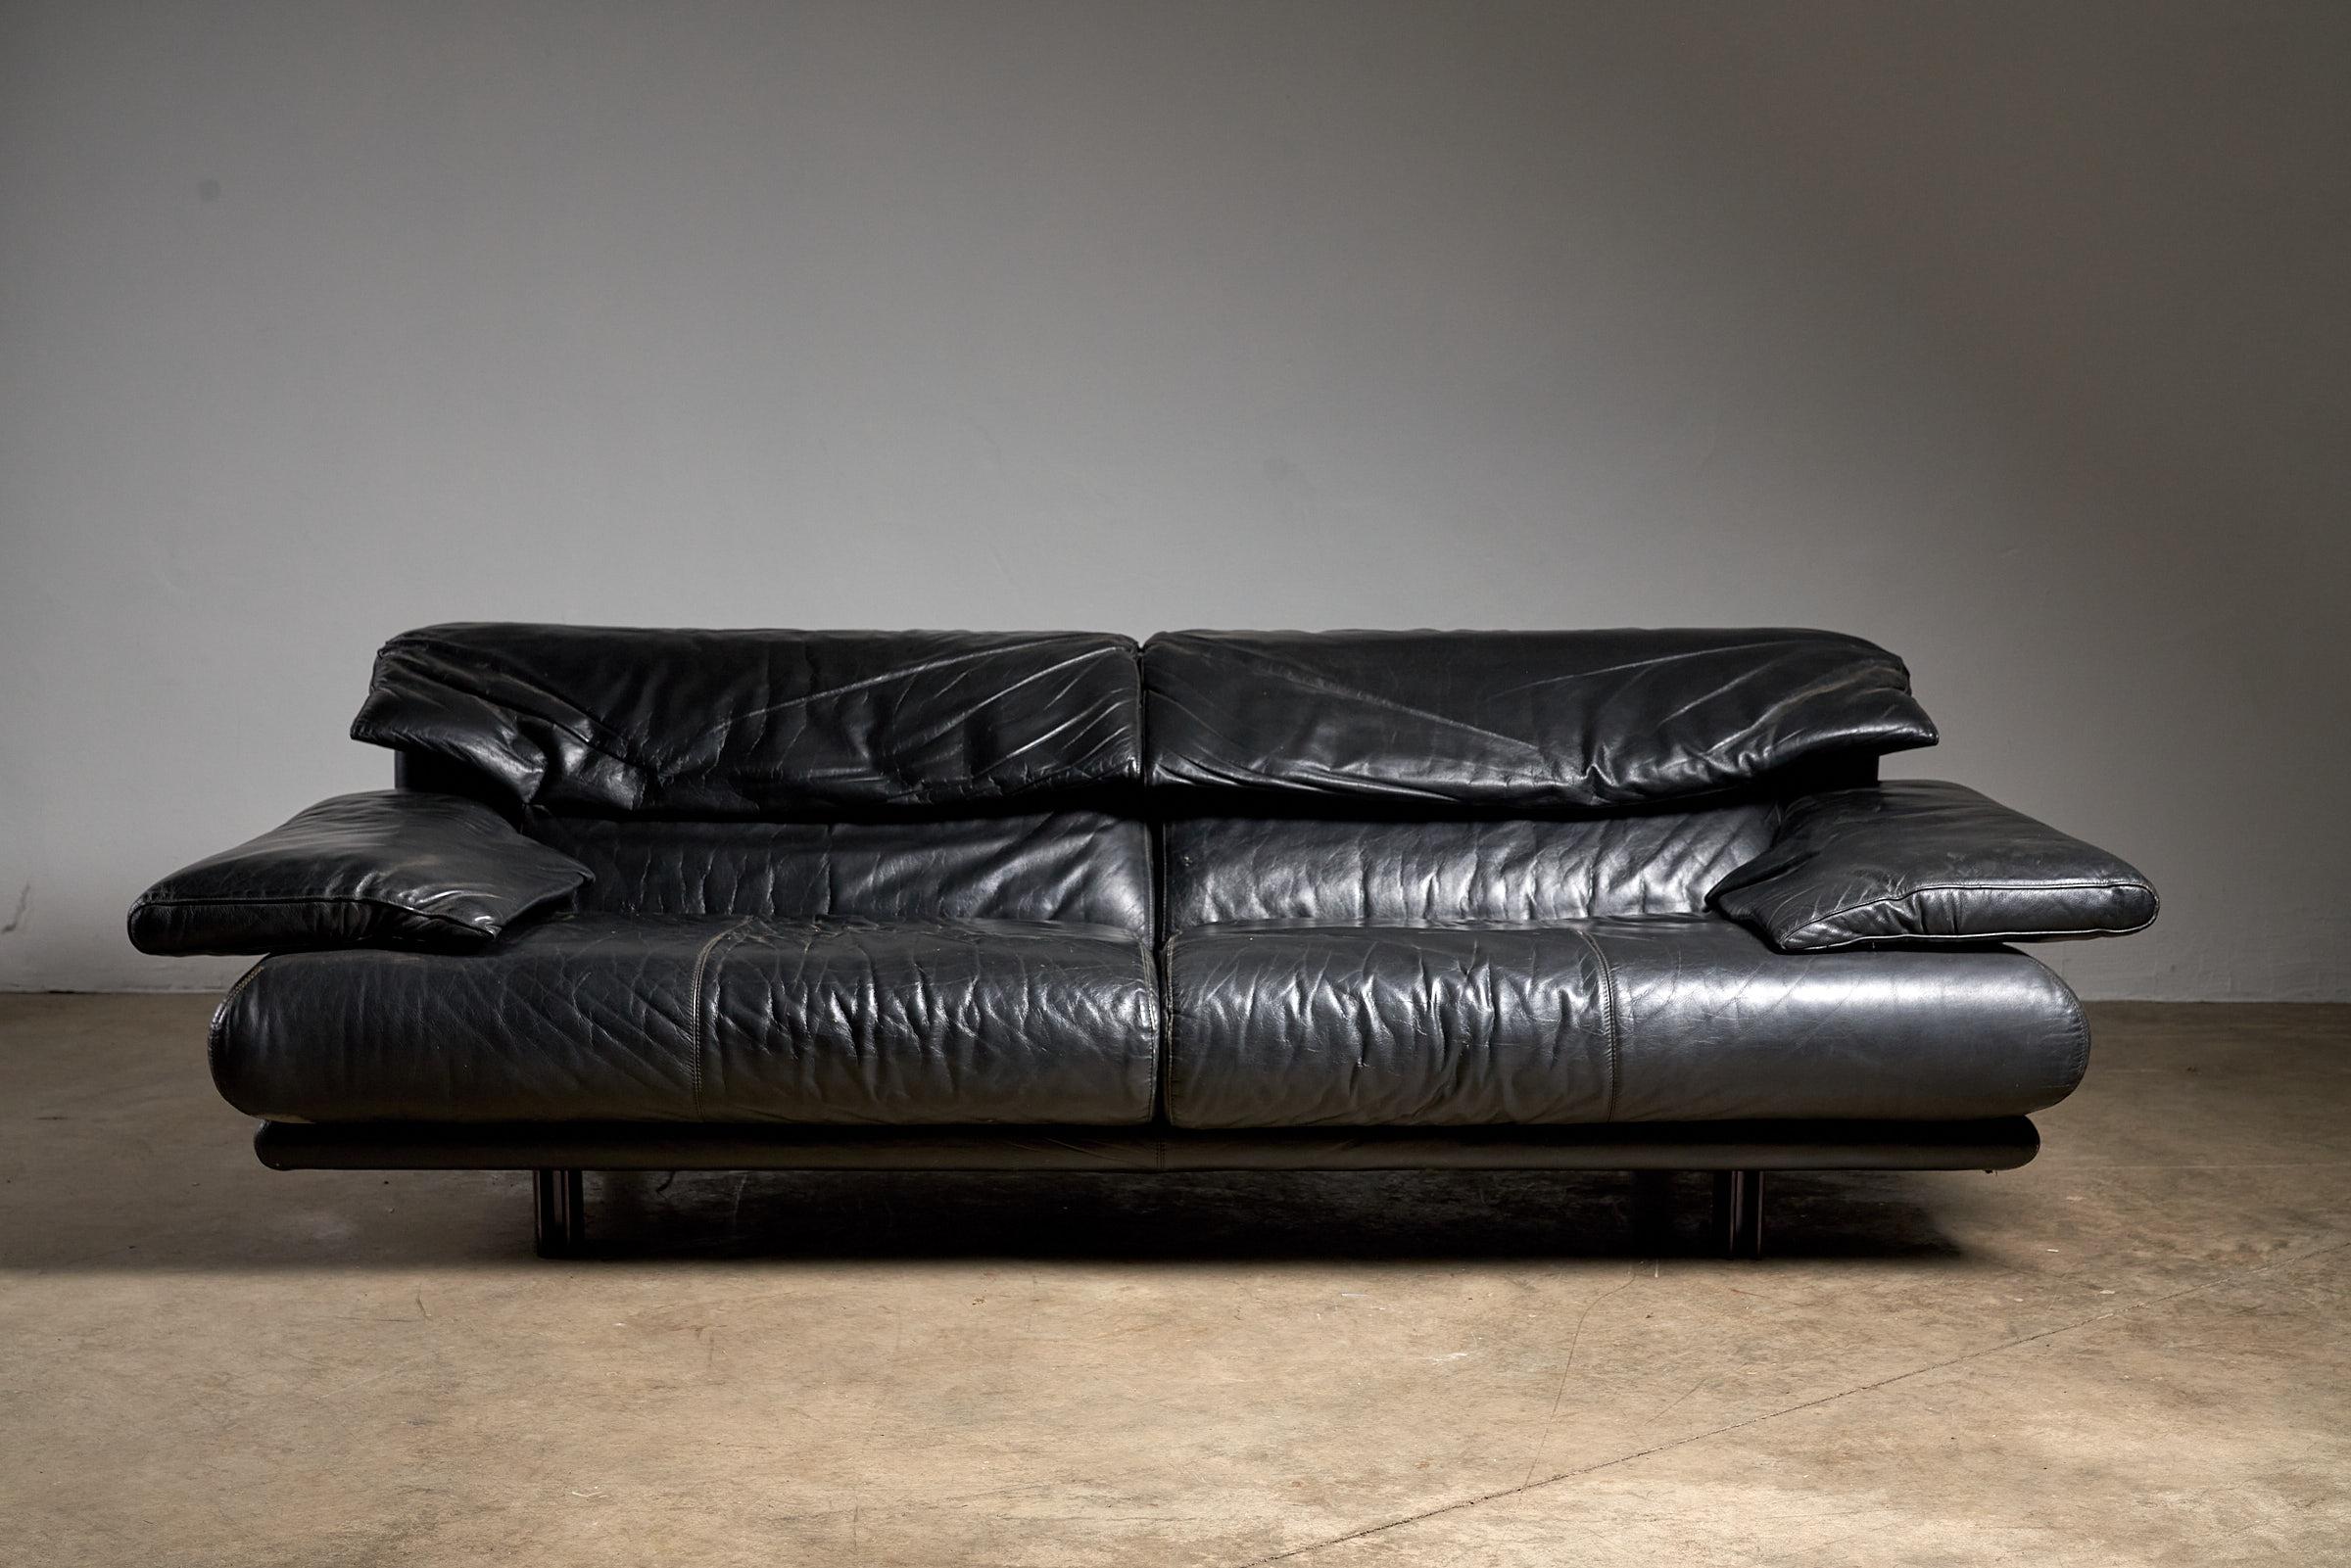 Plongez dans le luxe avec le canapé Alanda, conçu par Paolo Piva pour B&B Italia. Cette pièce exquise présente une élégance intemporelle en cuir noir. Son design géométrique et son revêtement en cuir en font une pièce d'exception, parfaite pour les